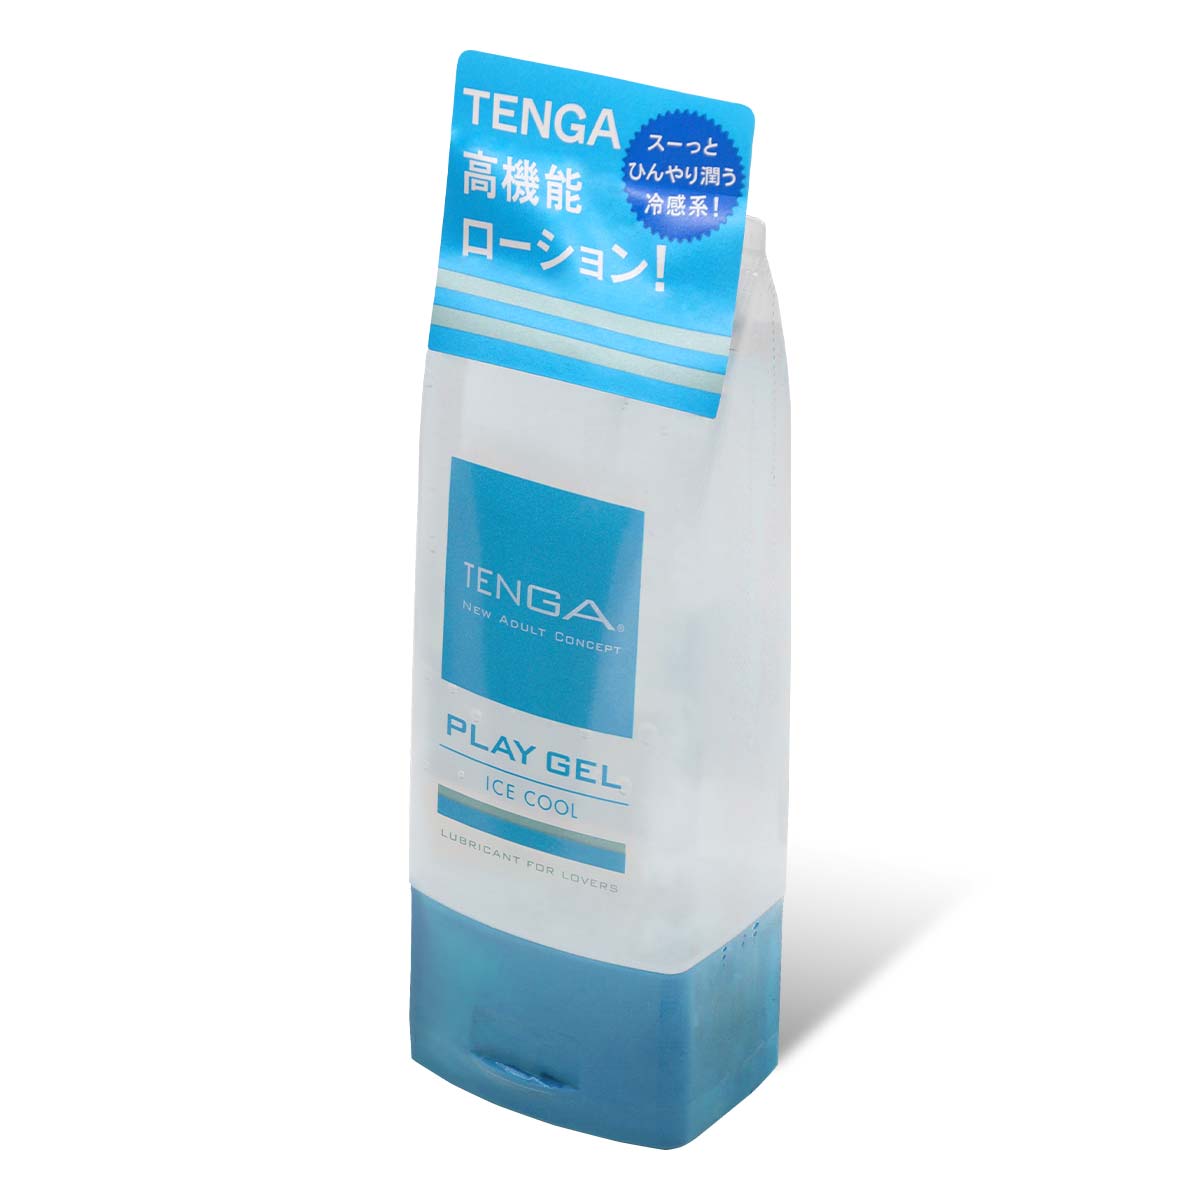 TENGA PLAY GEL ICE COOL 160ml 水基润滑剂-thumb_1